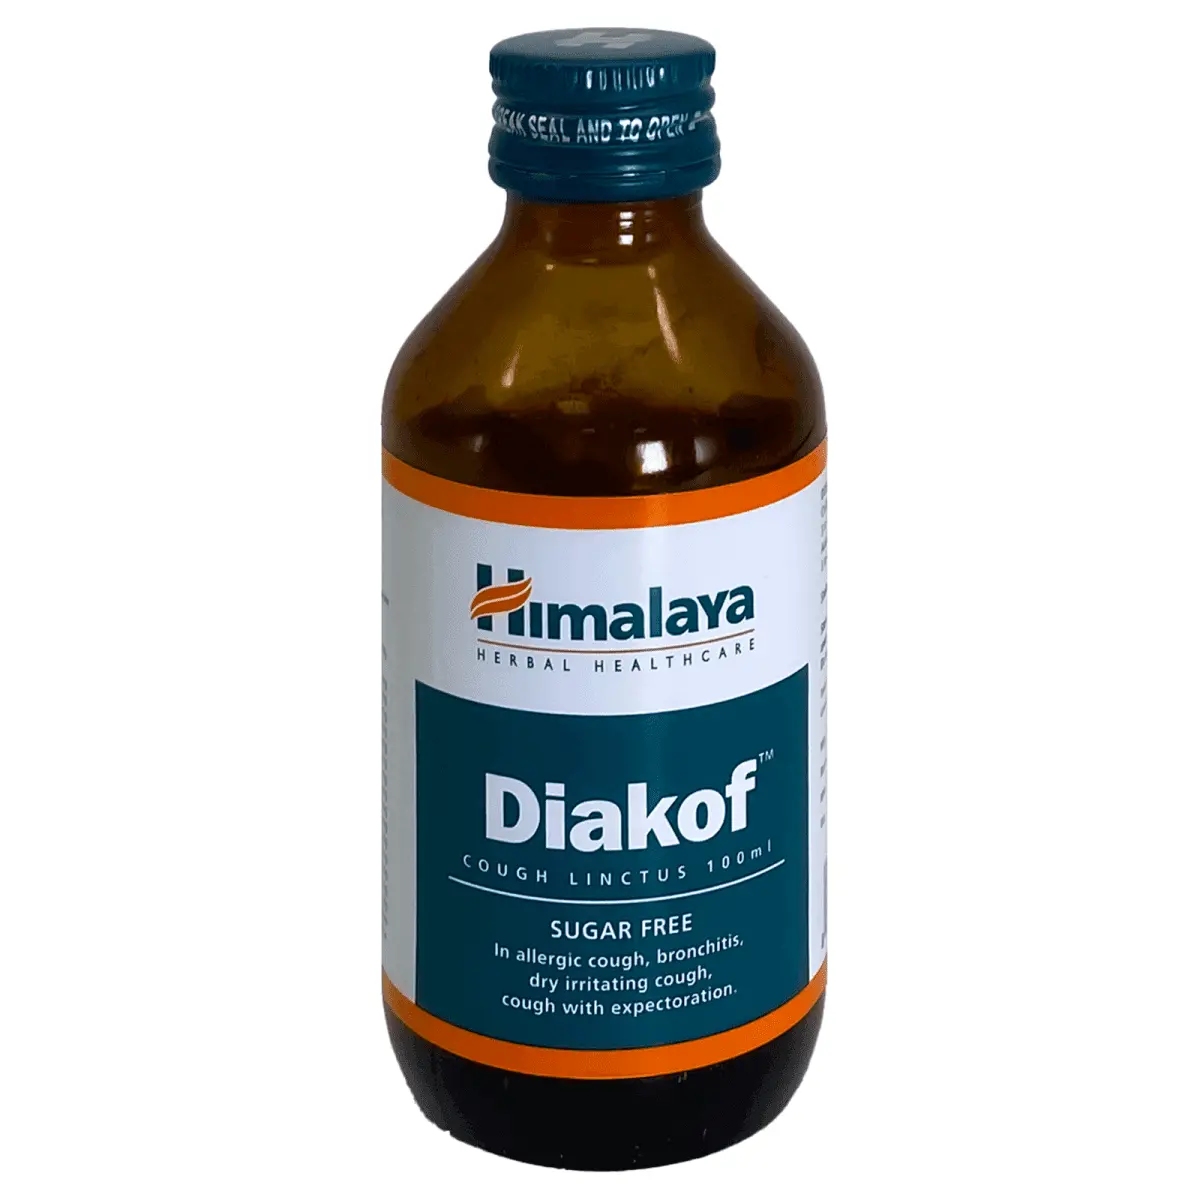 Himalaya Diakof Cough Syrup 100ml